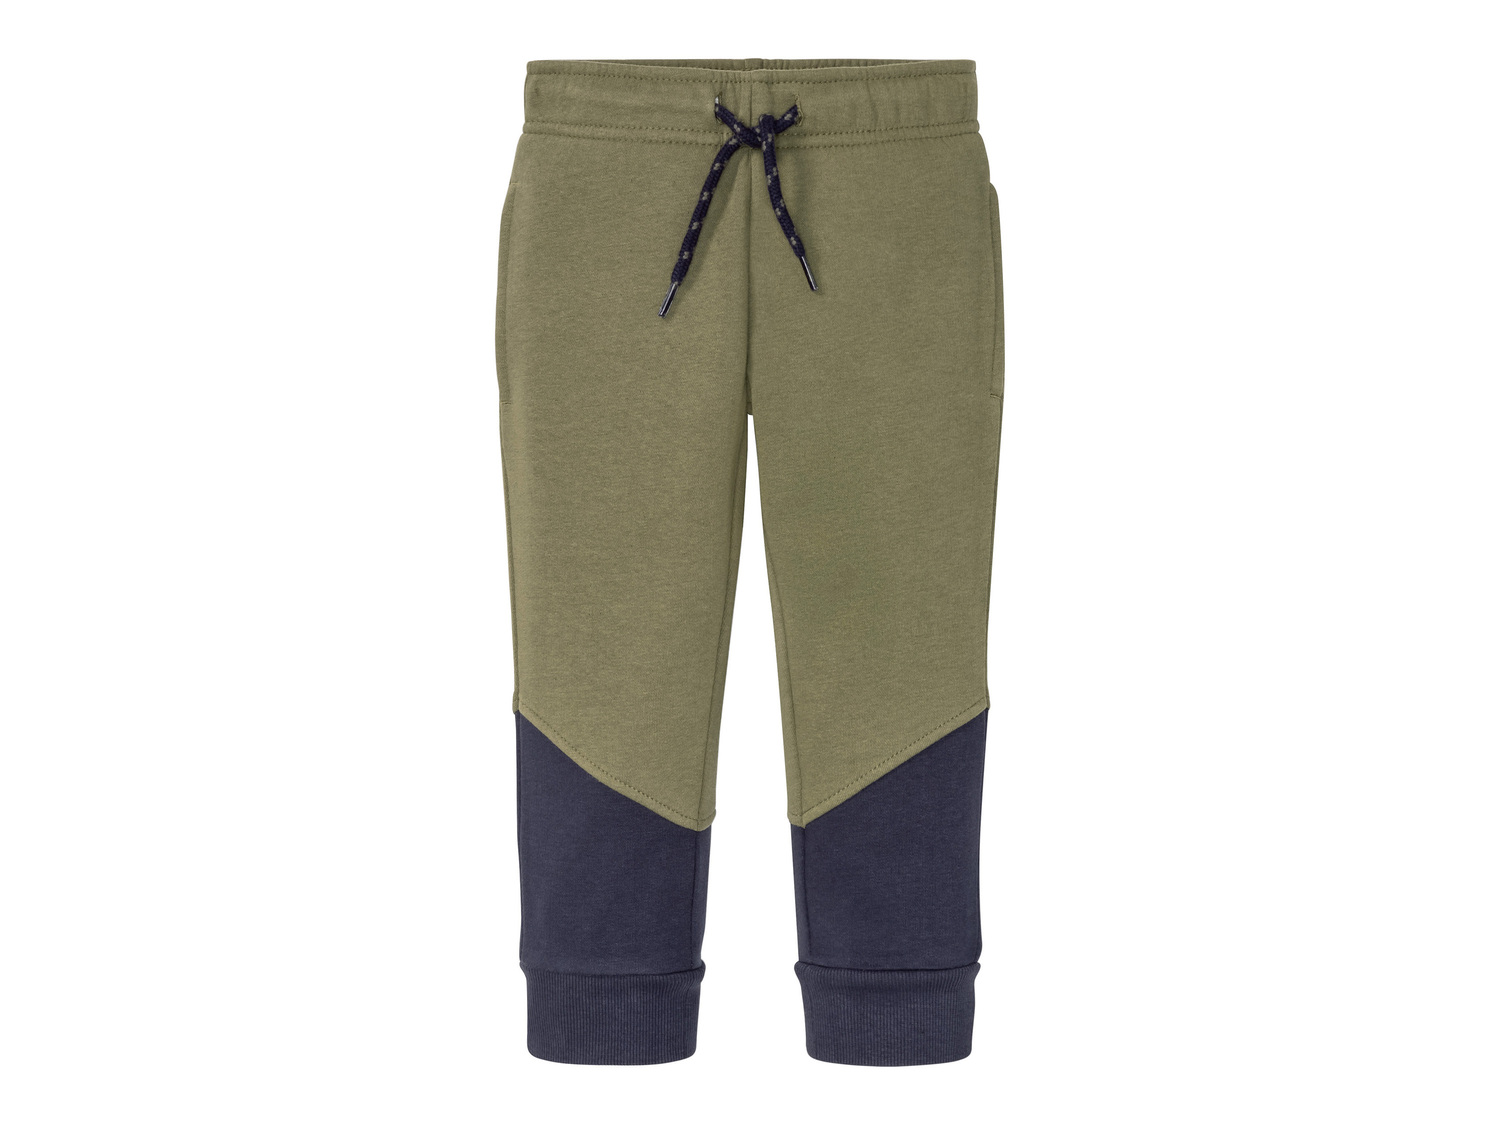 Pantaloni sportivi da bambino Lupilu, prezzo 4.99 &#8364; 
Misure: 1-6 anni
Taglie ...